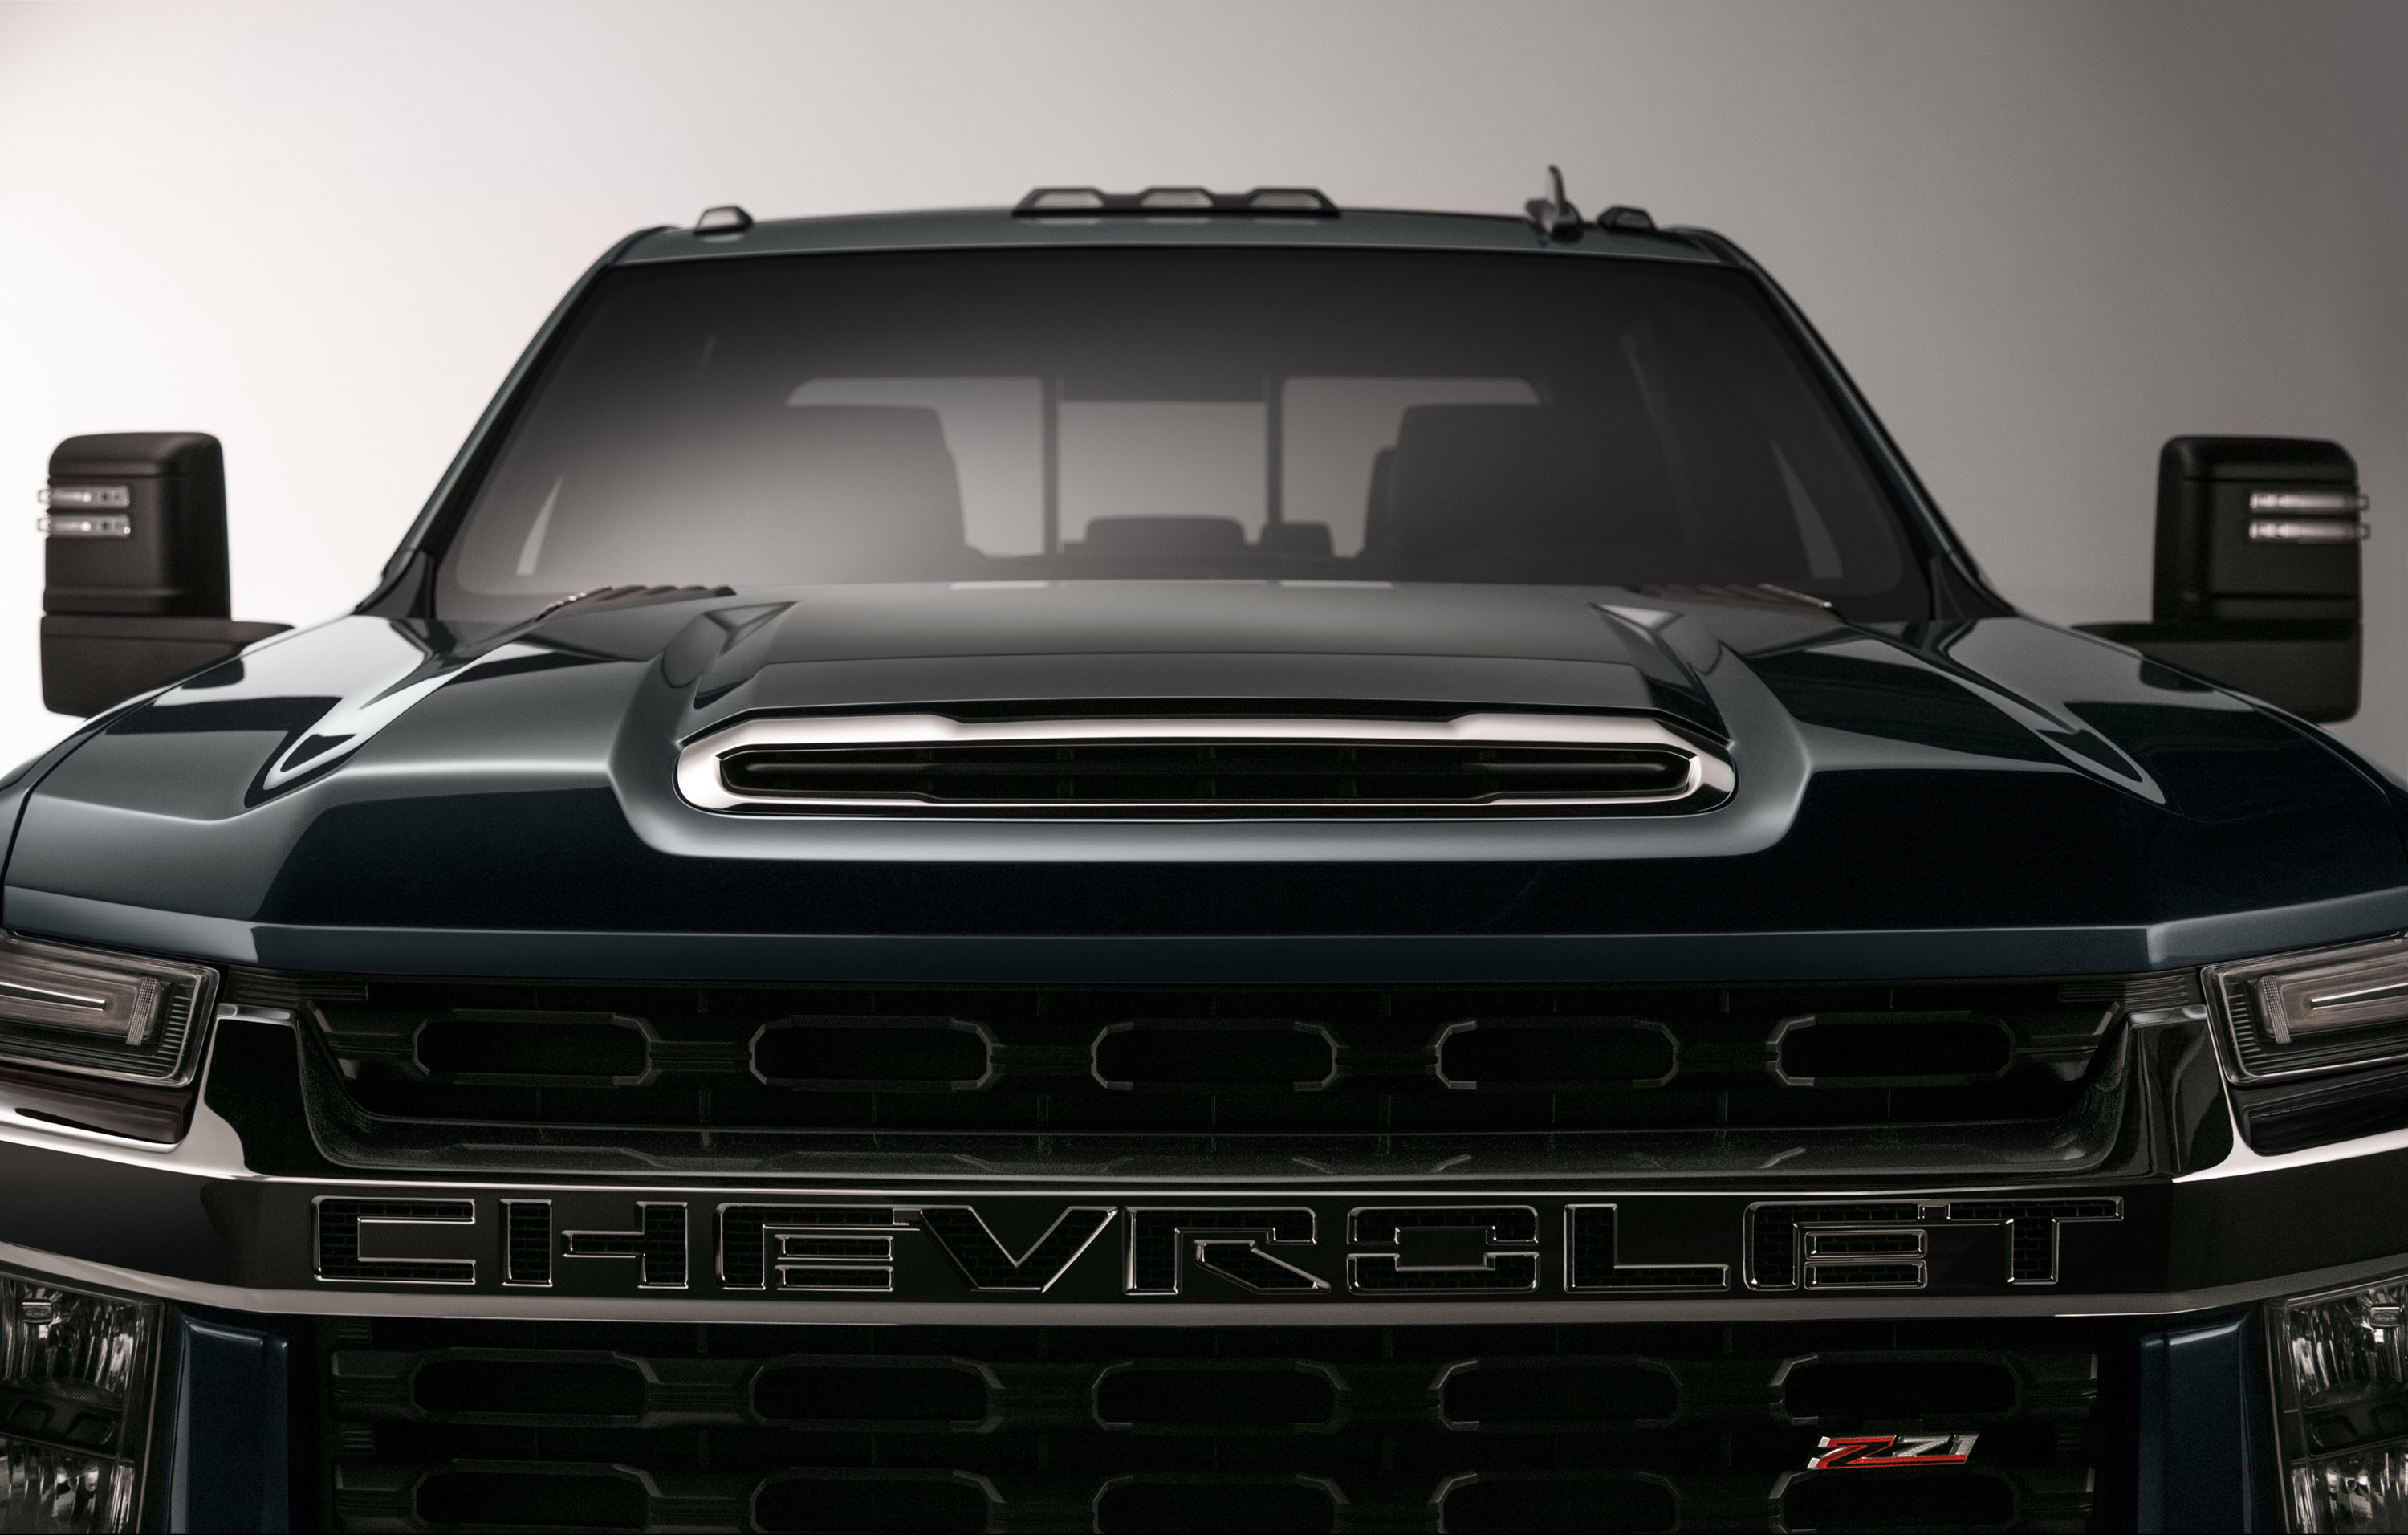 Что касается системы трансмиссии, 2020 Silverado HD поставляется с двумя двигателями: полностью переработанным бензиновым двигателем с прямым впрыском, соединенным с шестиступенчатой коробкой передач и Duramax Turbo-Diesel V8, который обеспечивает ог